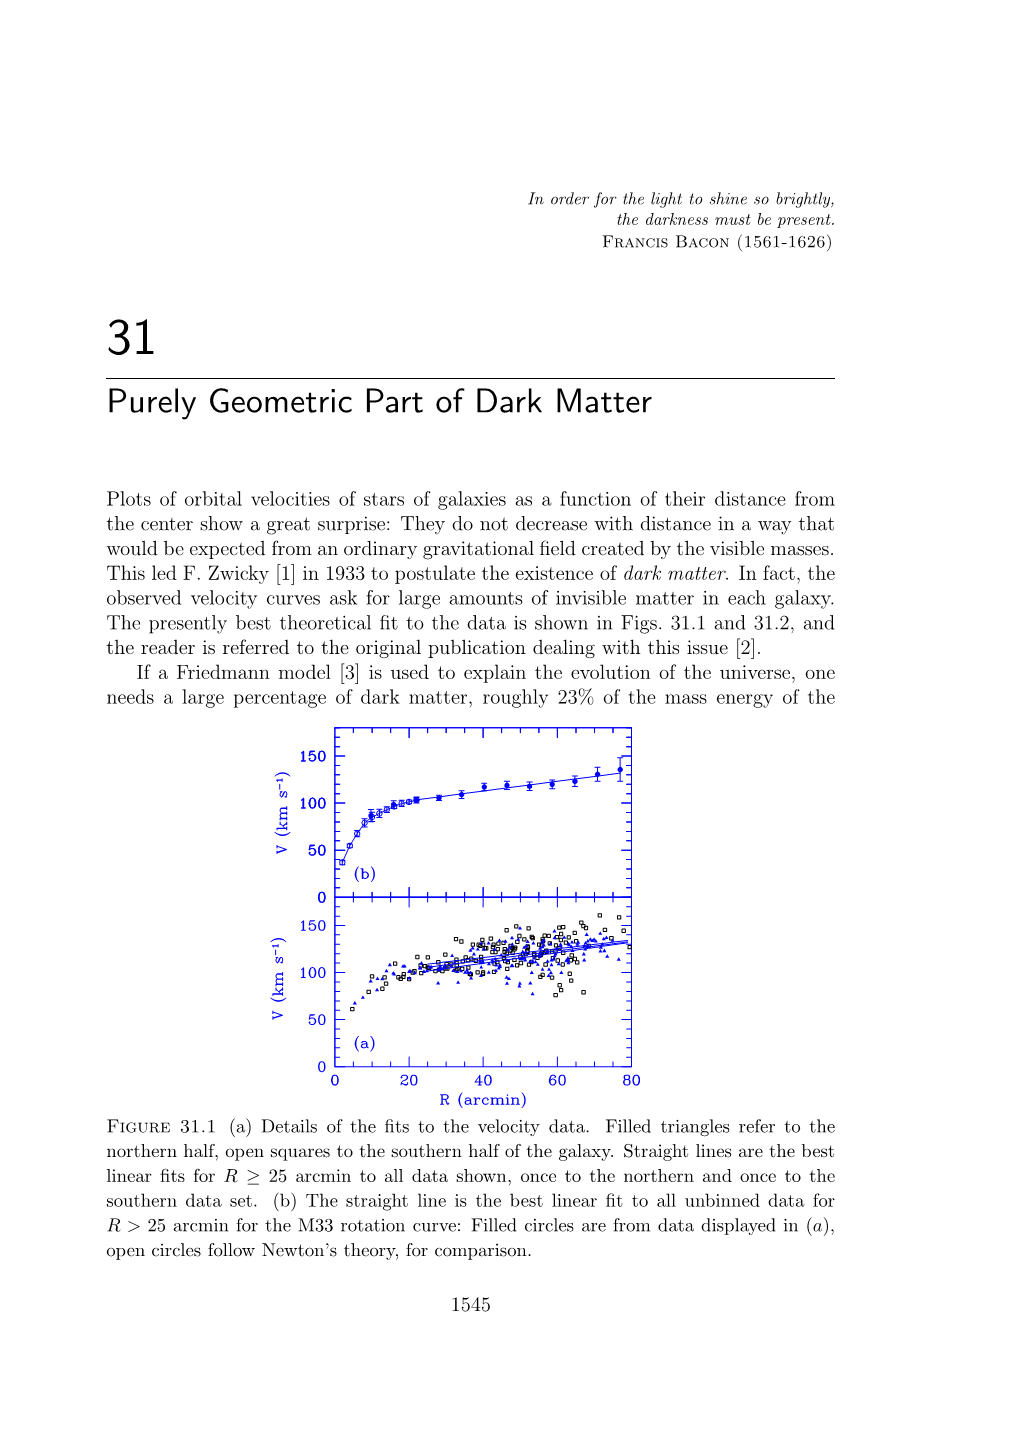 Purely Geometric Part of Dark Matter